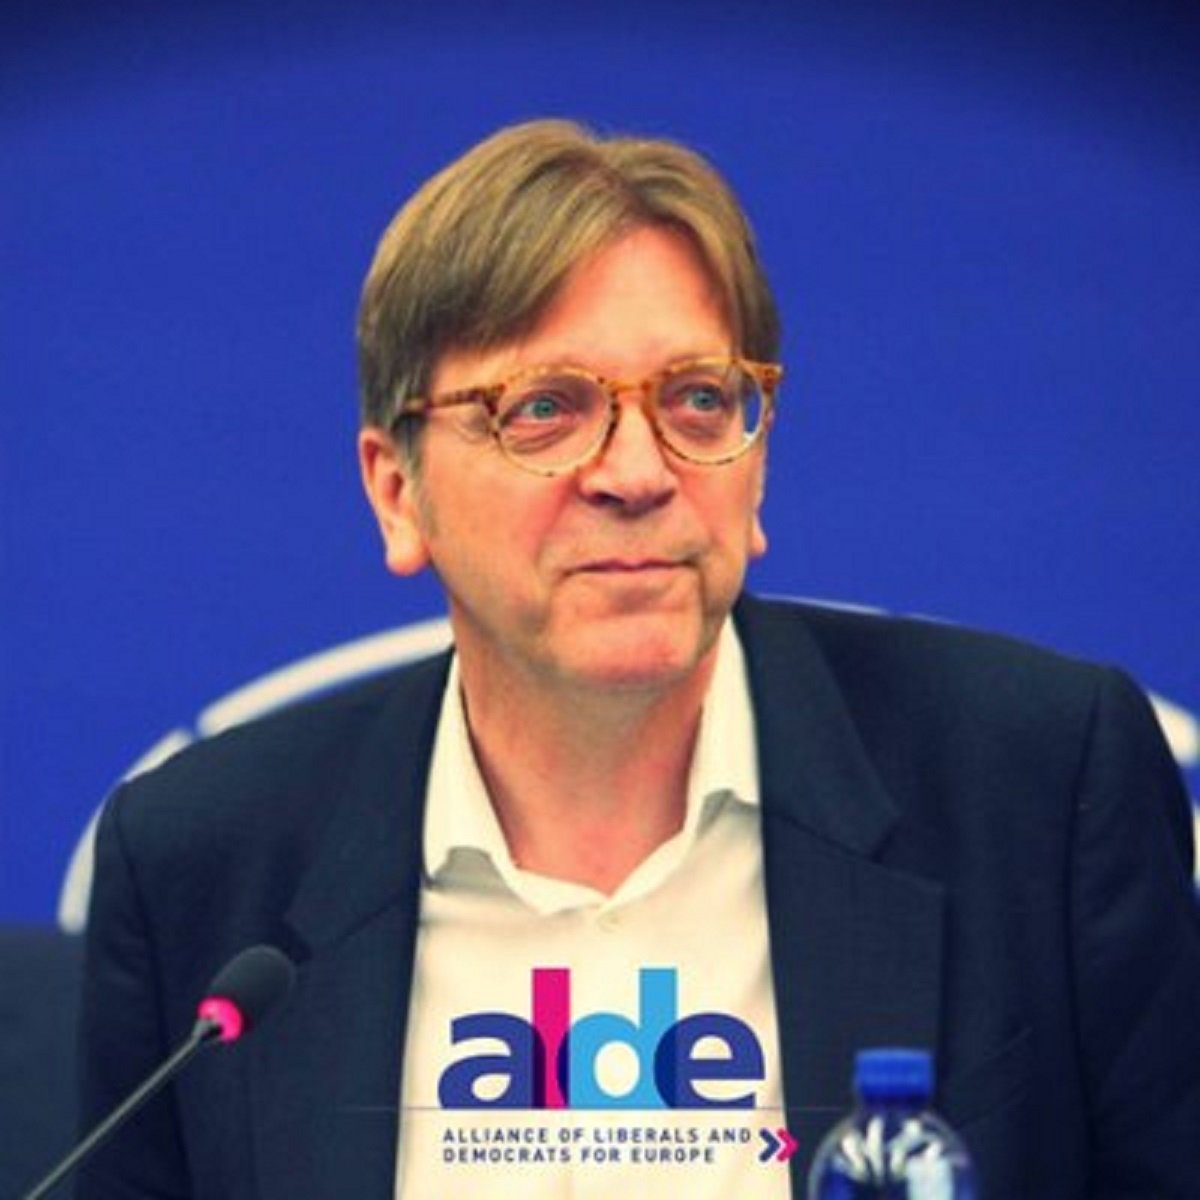 El portaveu dels liberals europeus es desmarca de Cs i critica els empresonaments